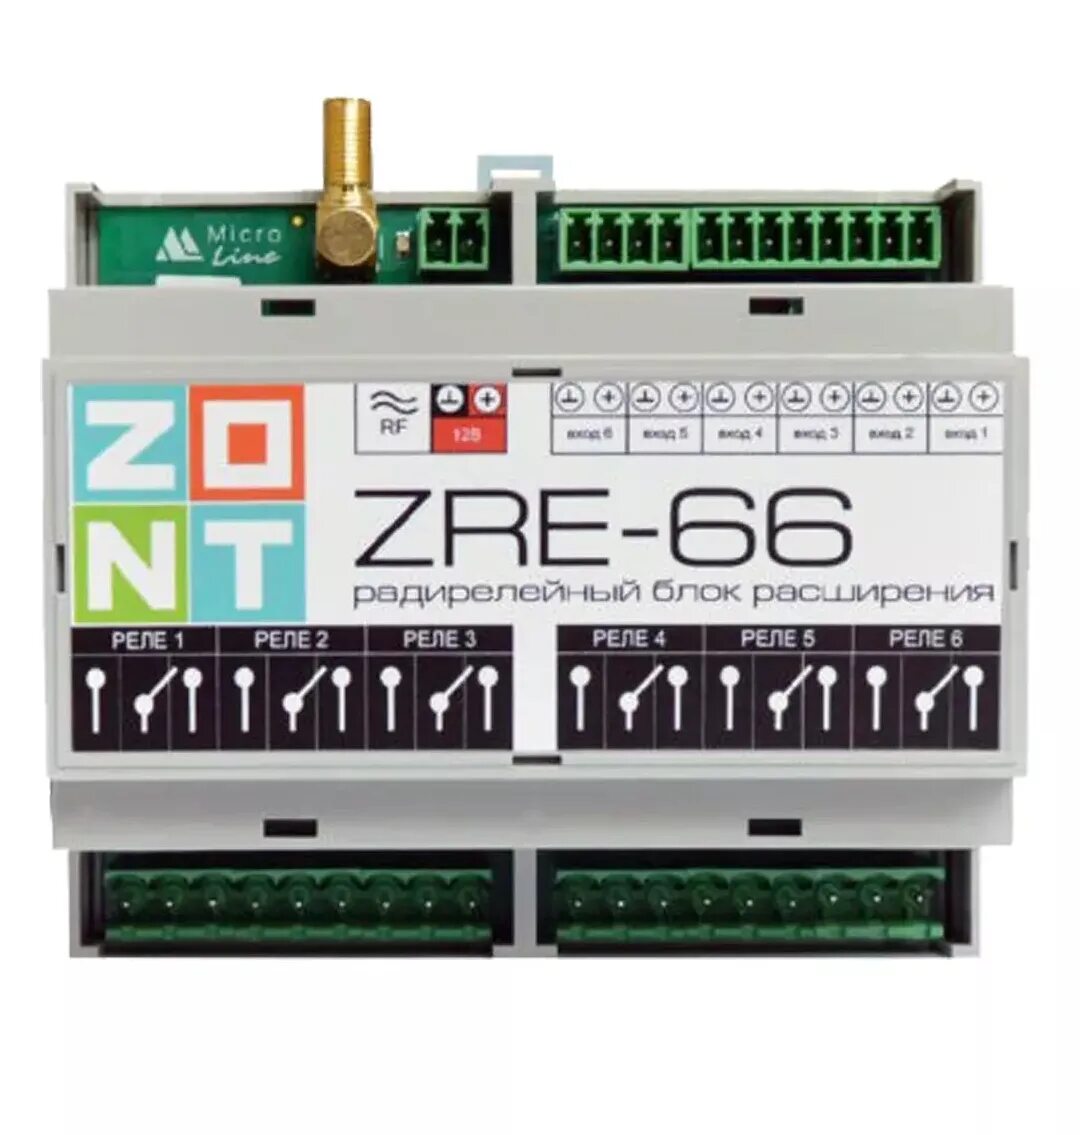 Zont h купить. Zont h2000+ датчики. Контроллер Zont h-2000+. Zont h2000+ контроллер GSM модуль. Блок расширения радиорелейный zre66.